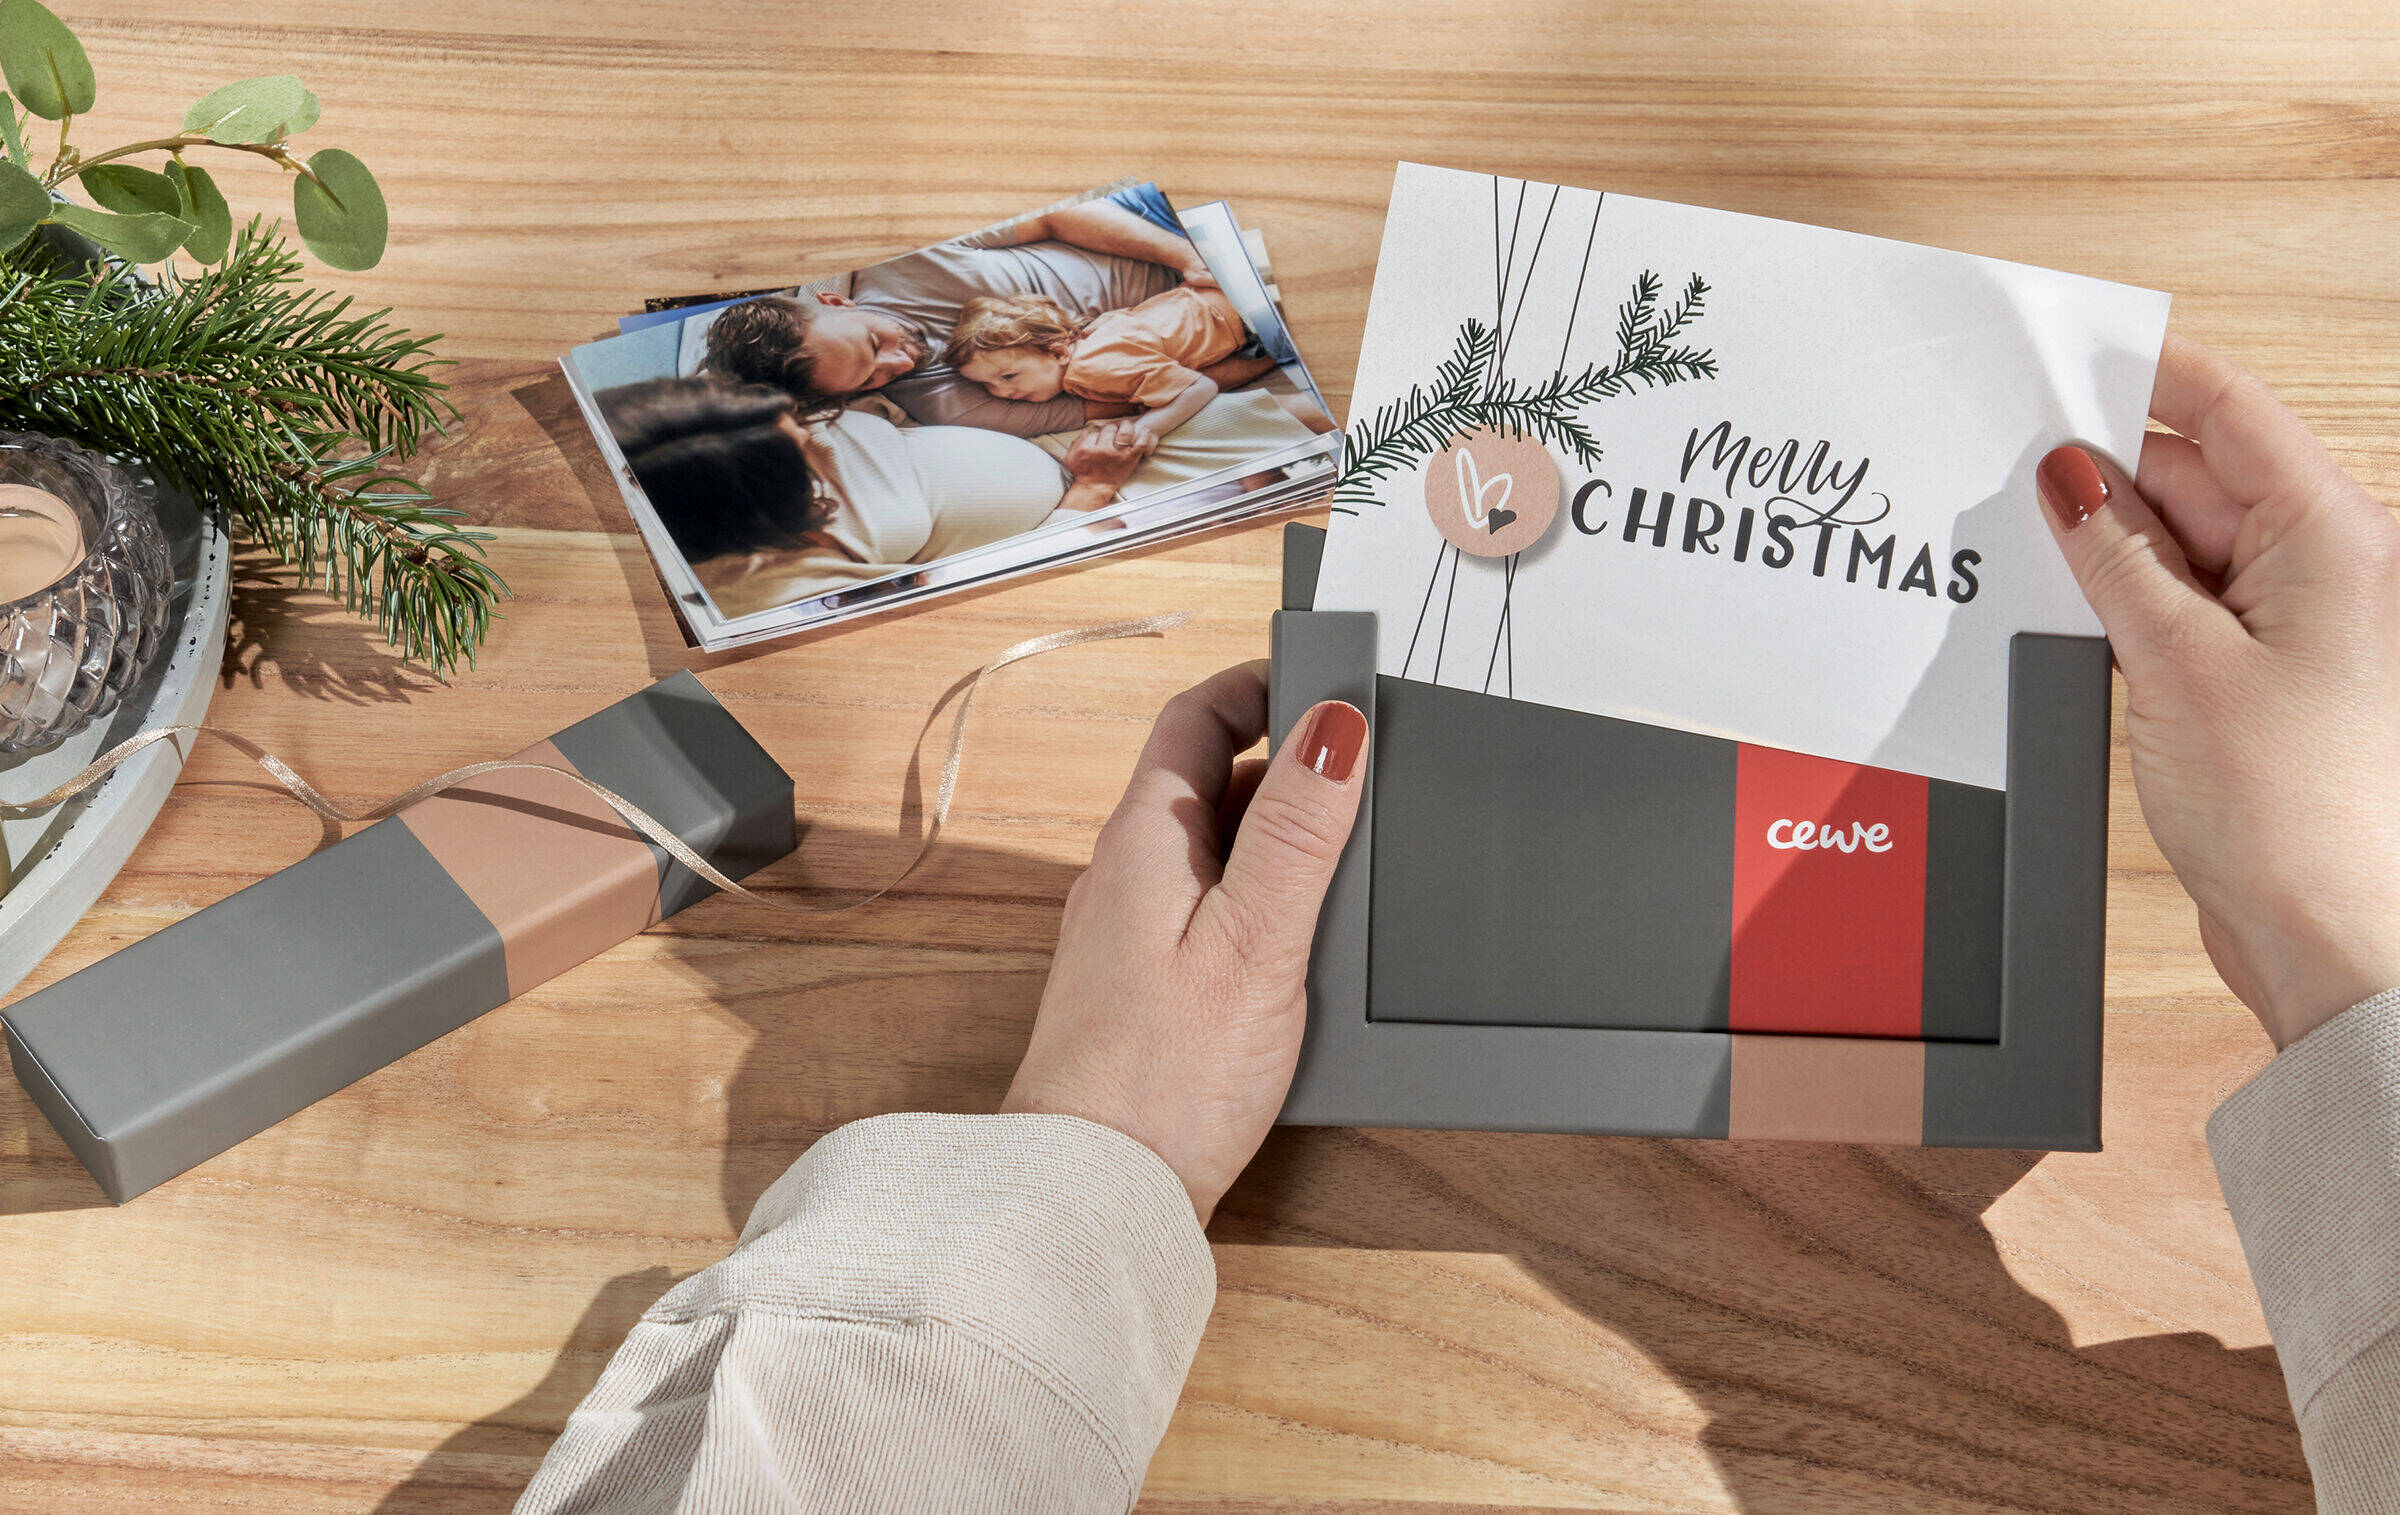 Zwei Hände schieben ein Bild, auf dem „Merry Christmas“ steht, in den Bilderrahmen der Bilderbox. Daneben steht ein weihnachtliches Gesteck und es liegt ein Stapel Familienfotos auf dem Tisch.